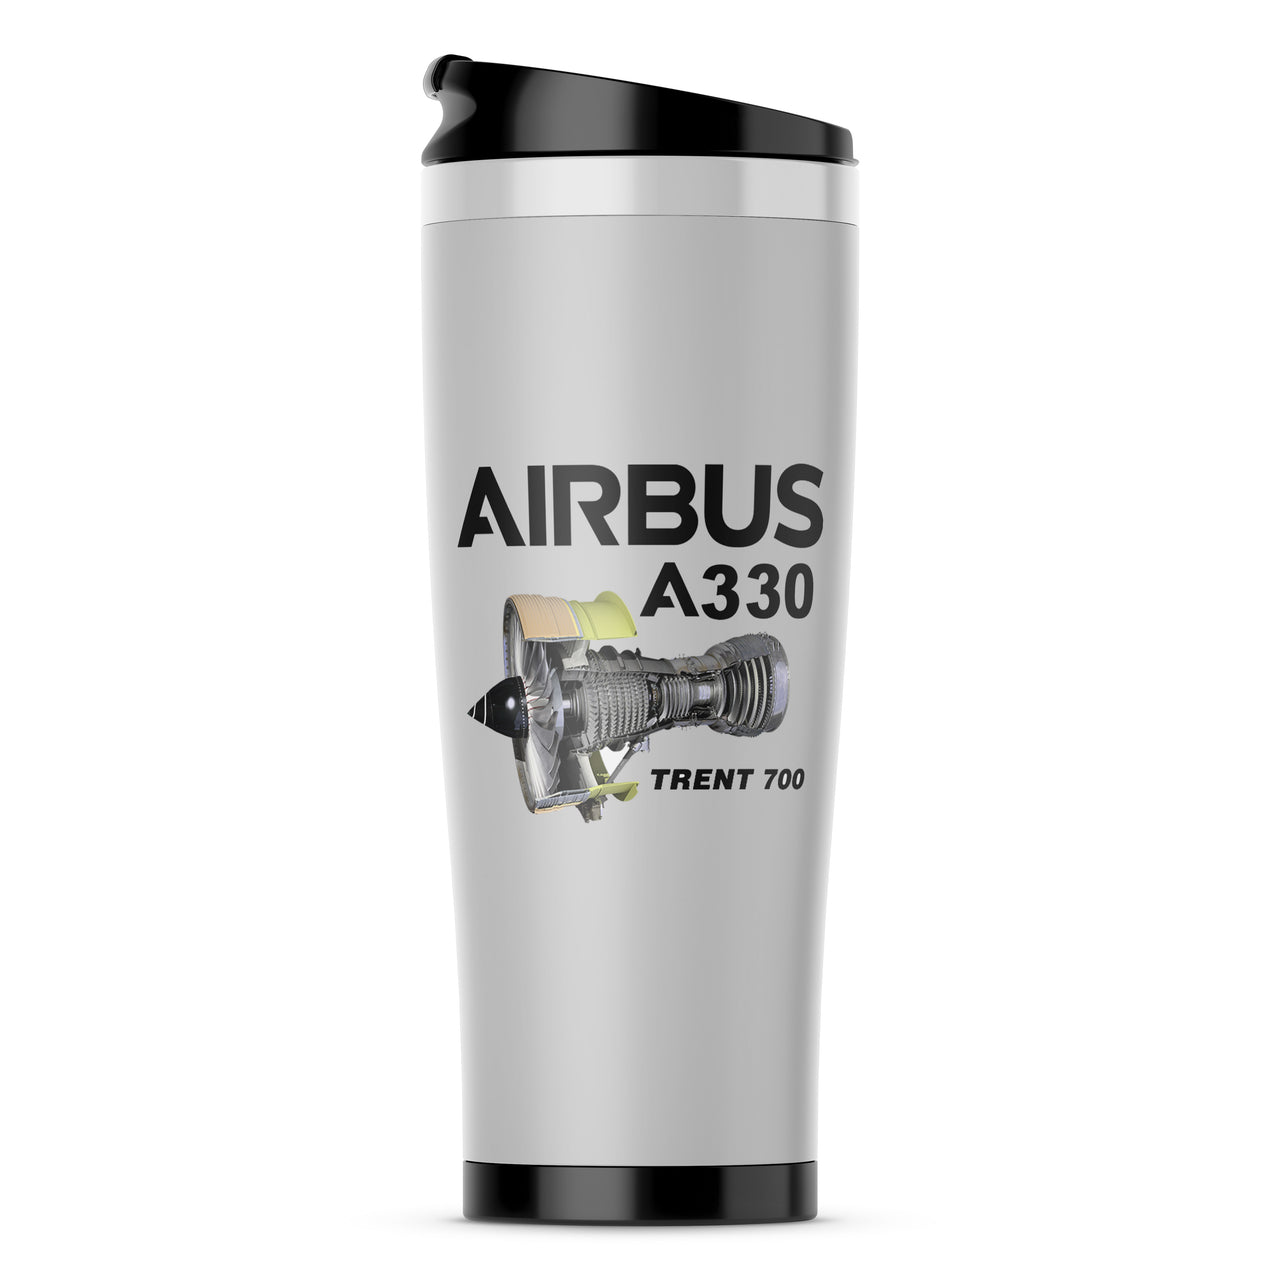 Airbus A330 & Trent 700 Engine Designed Travel Mugs